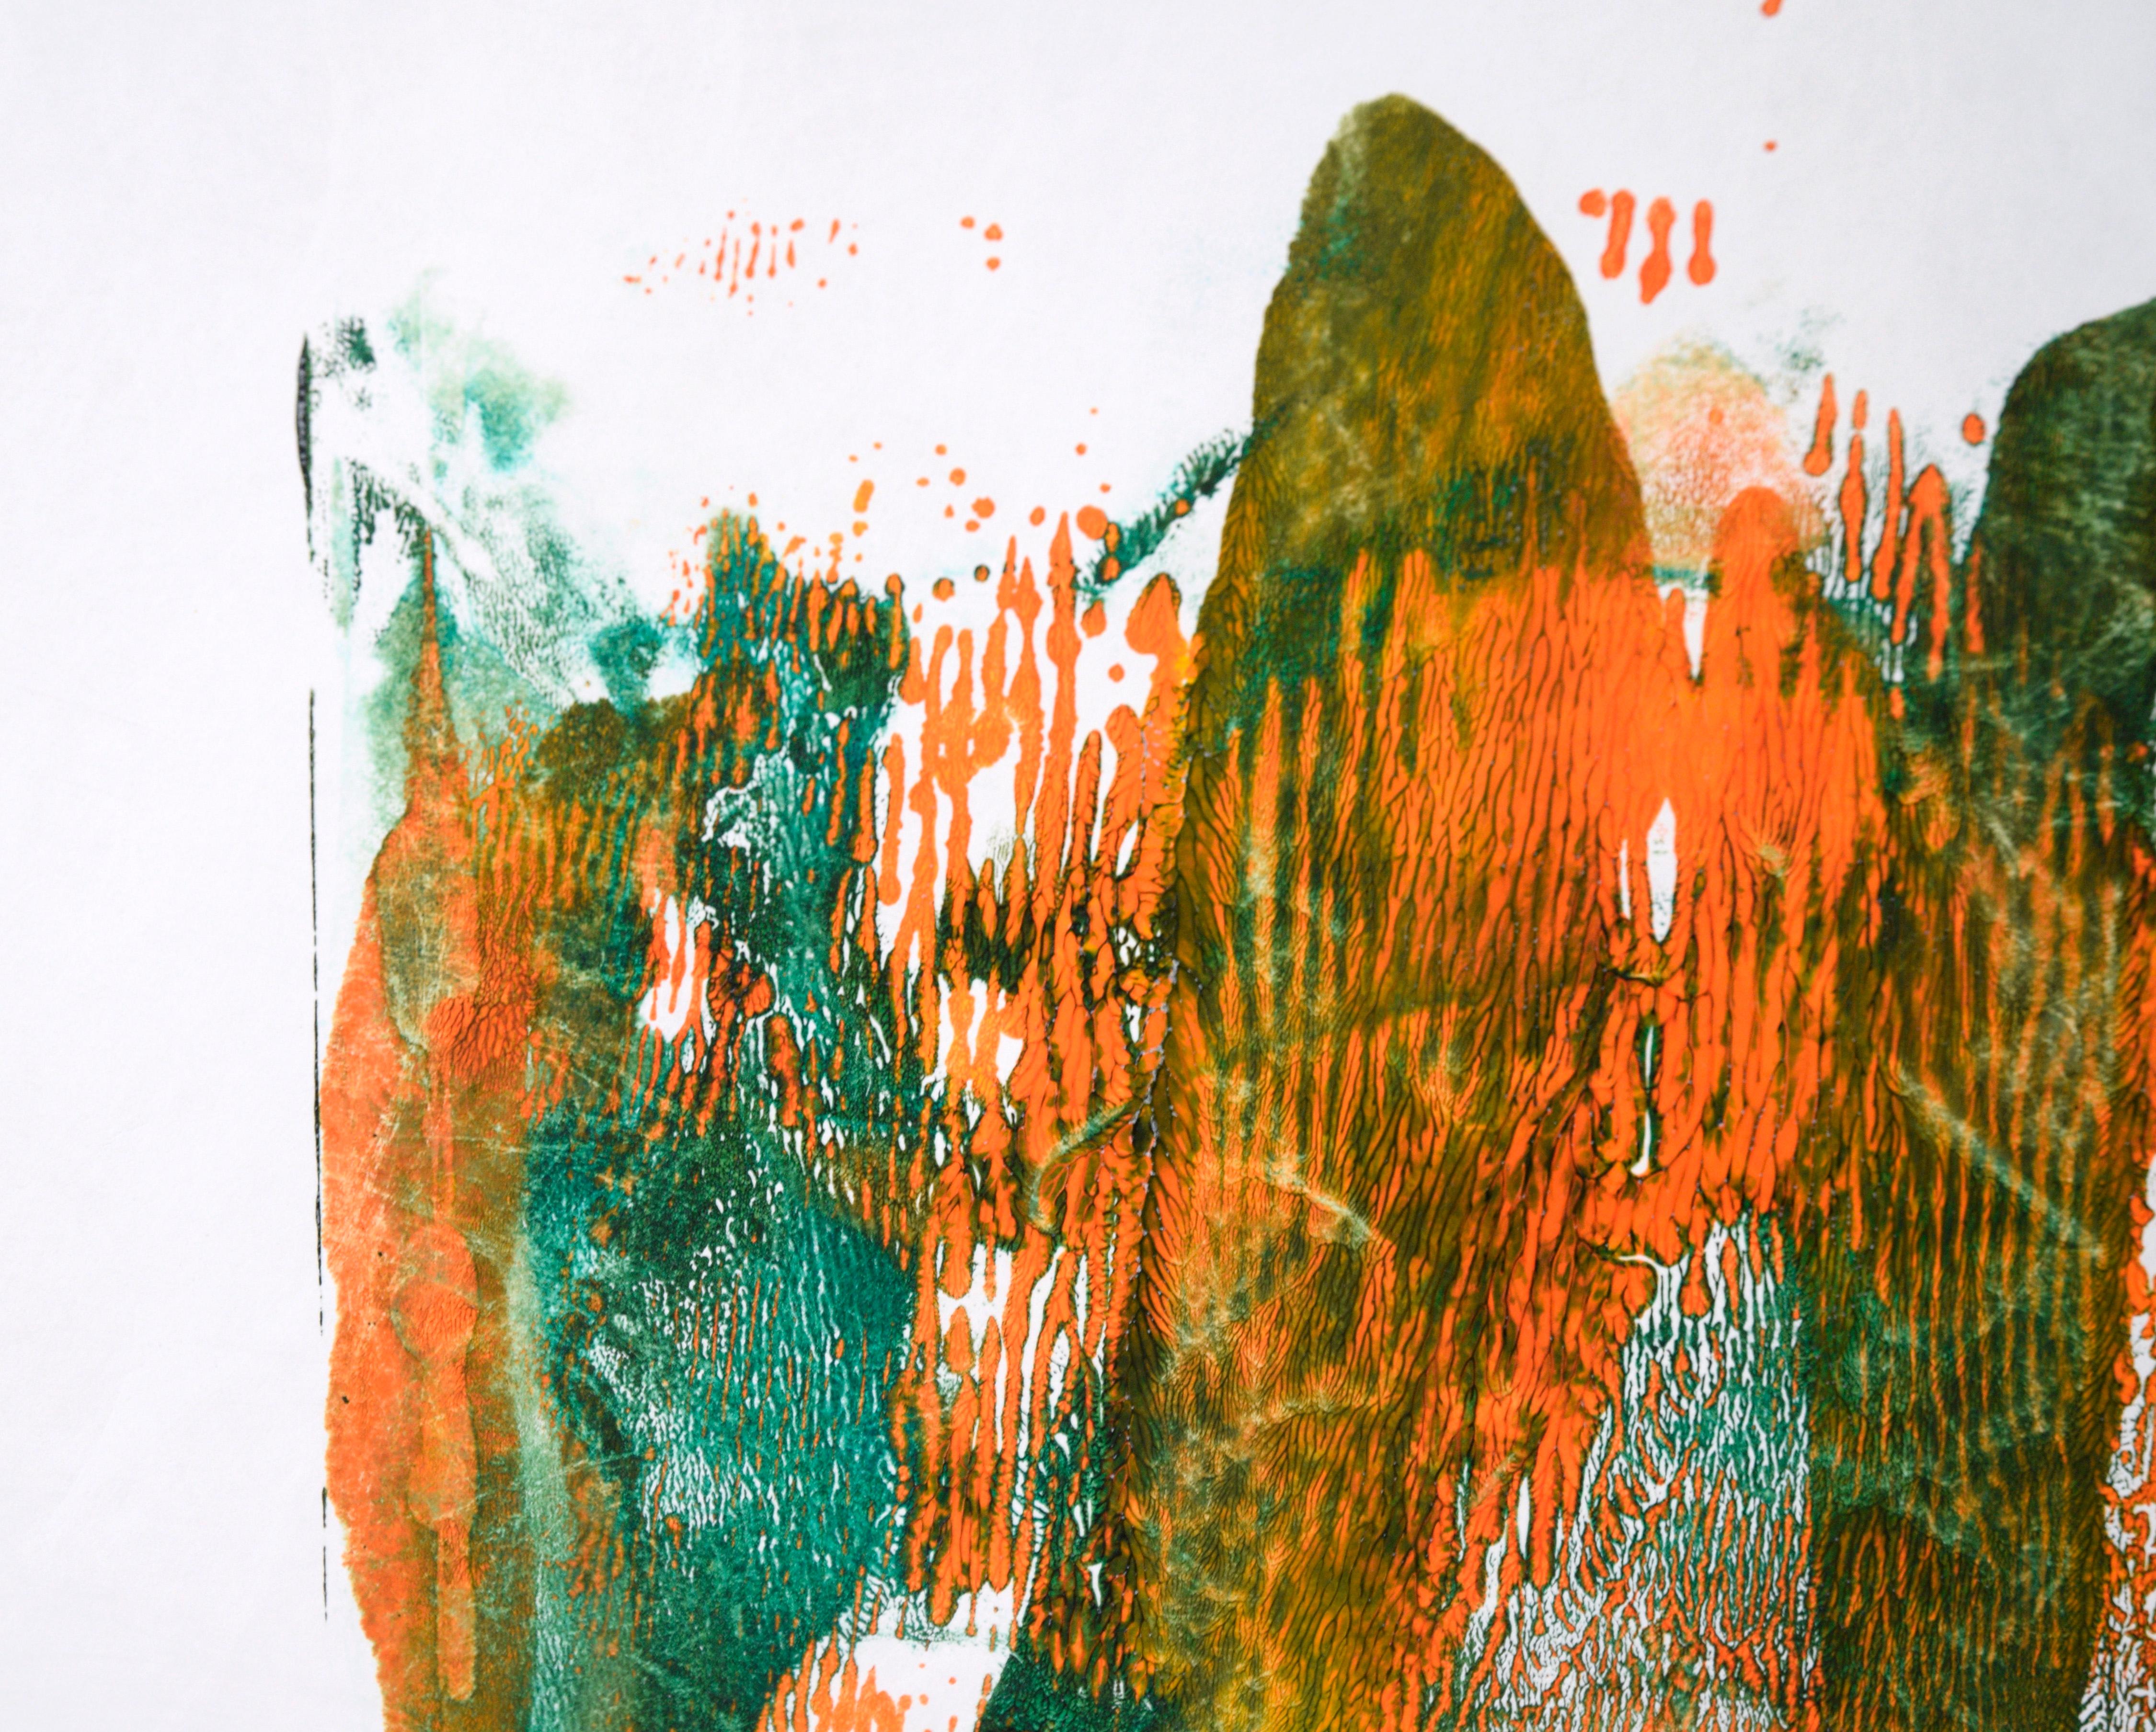 Grüne und orangefarbene abstrakte Komposition aus Acryl auf Papier – Painting von Ricardo de Silva